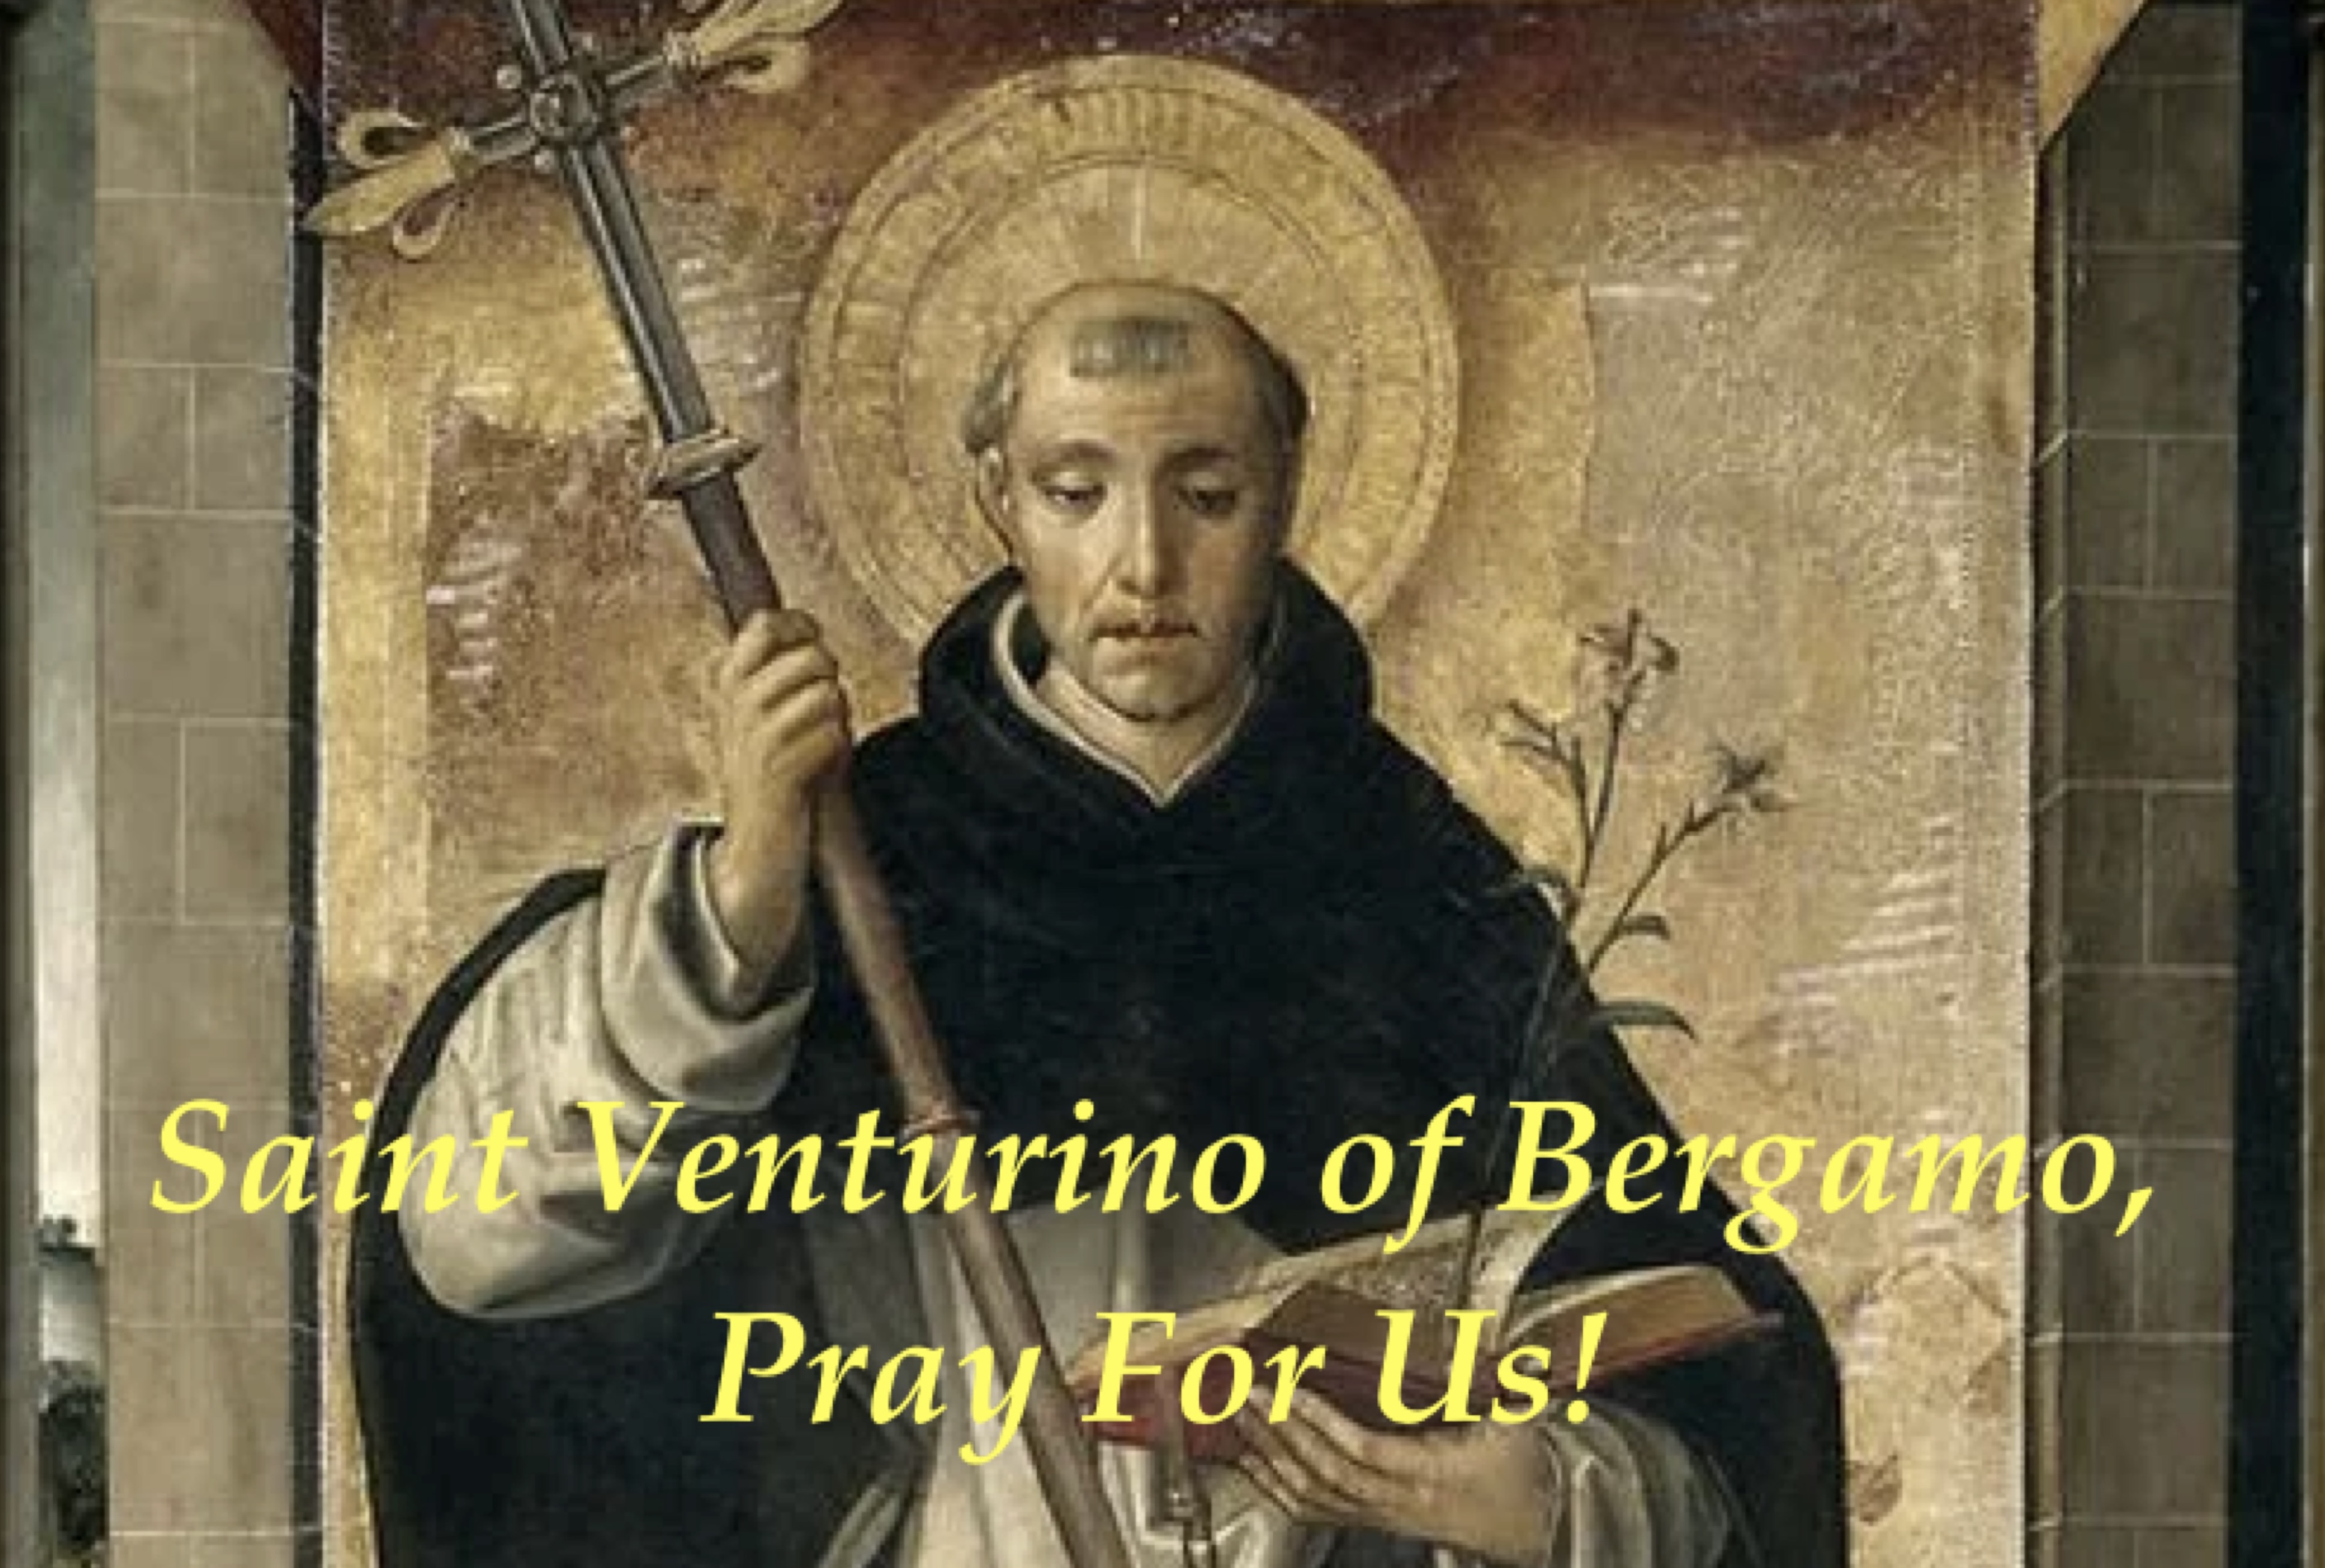 28th March - Saint Venturino of Bergamo